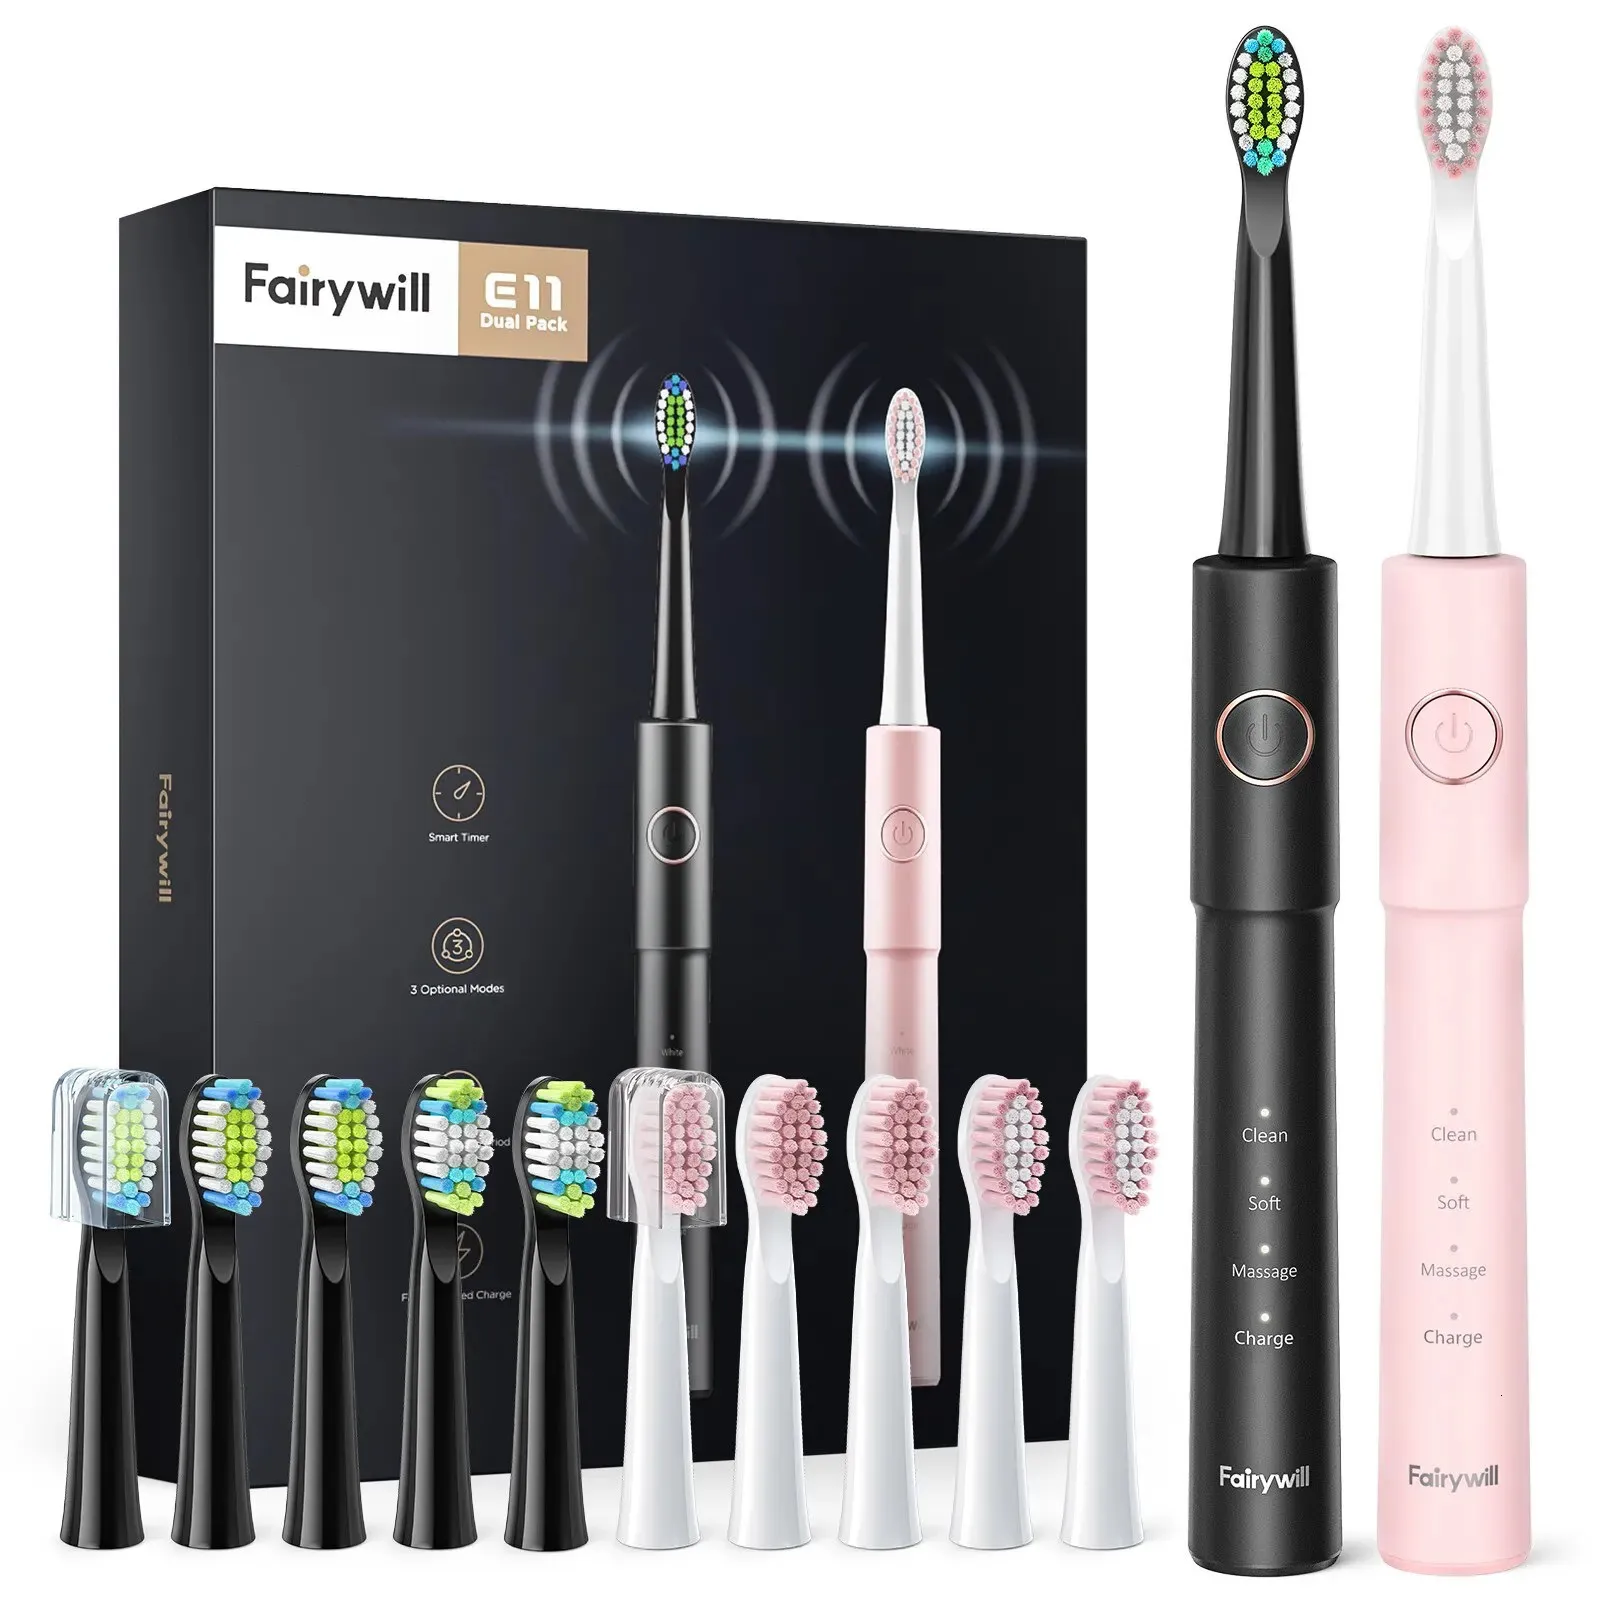 Fairywill Sonic Electric Toothbrush E11 Vattentät USB -laddning med 8 borstersättningshuvuden Svart och rosa set för par 240220